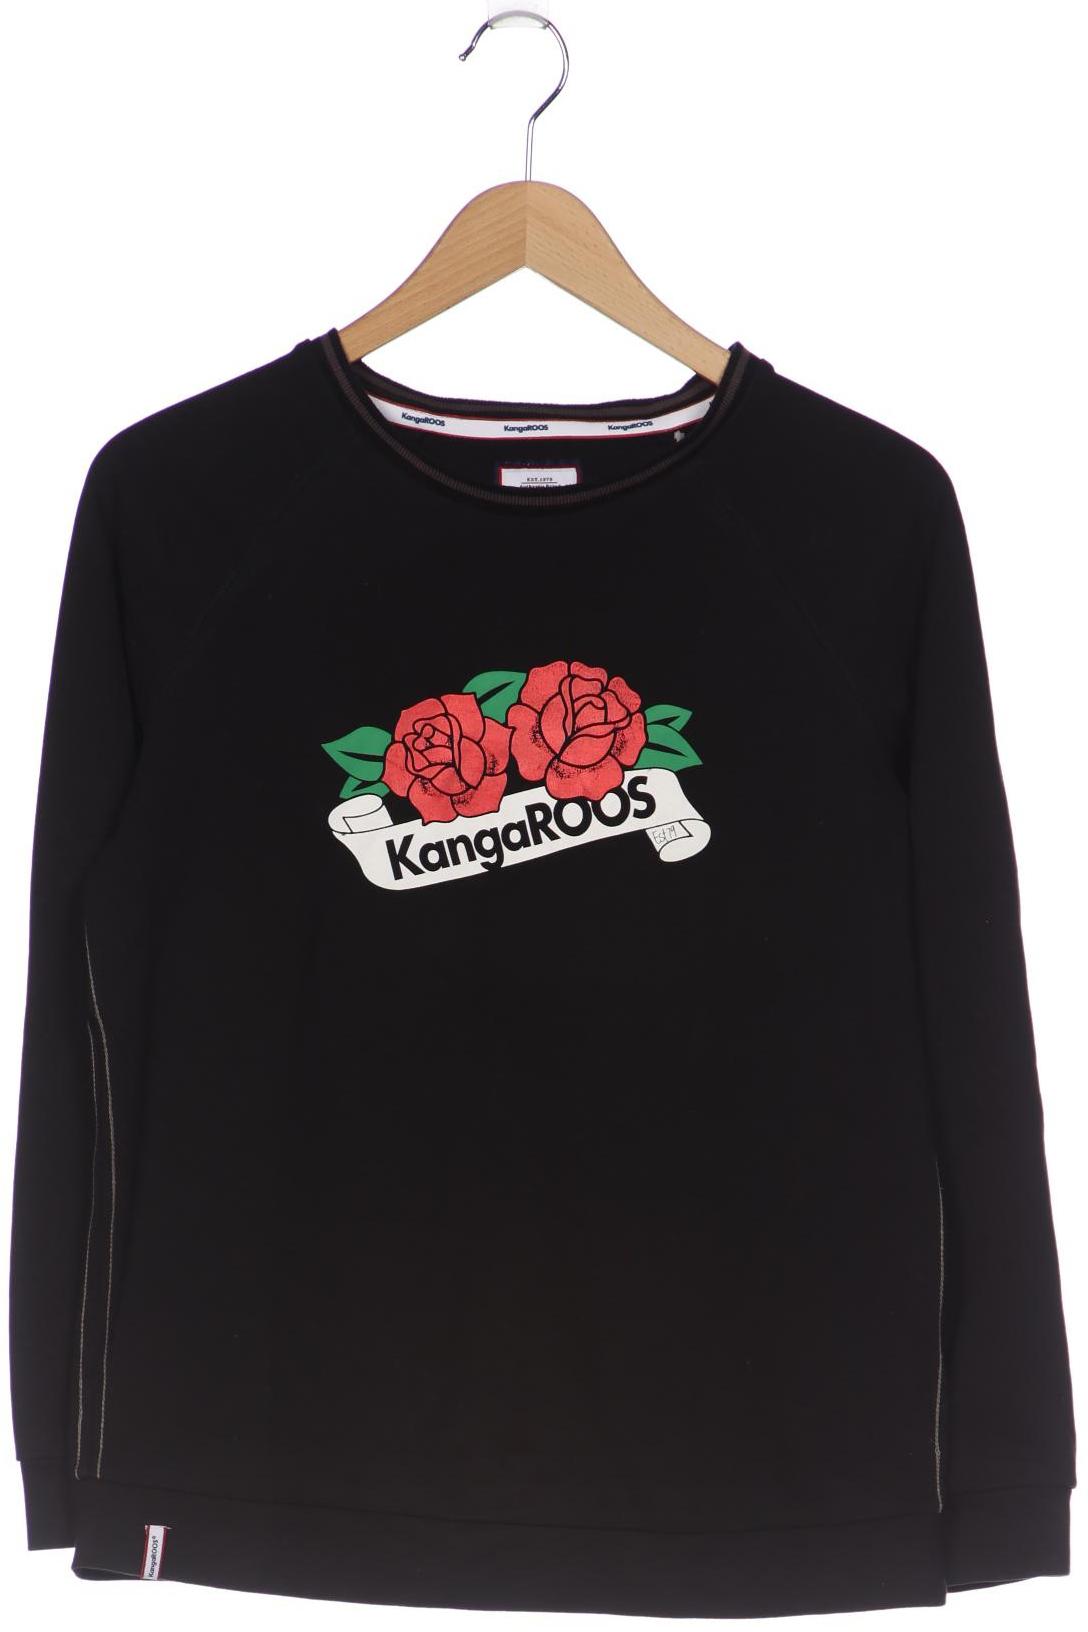 KangaROOS Damen Sweatshirt, schwarz von Kangaroos